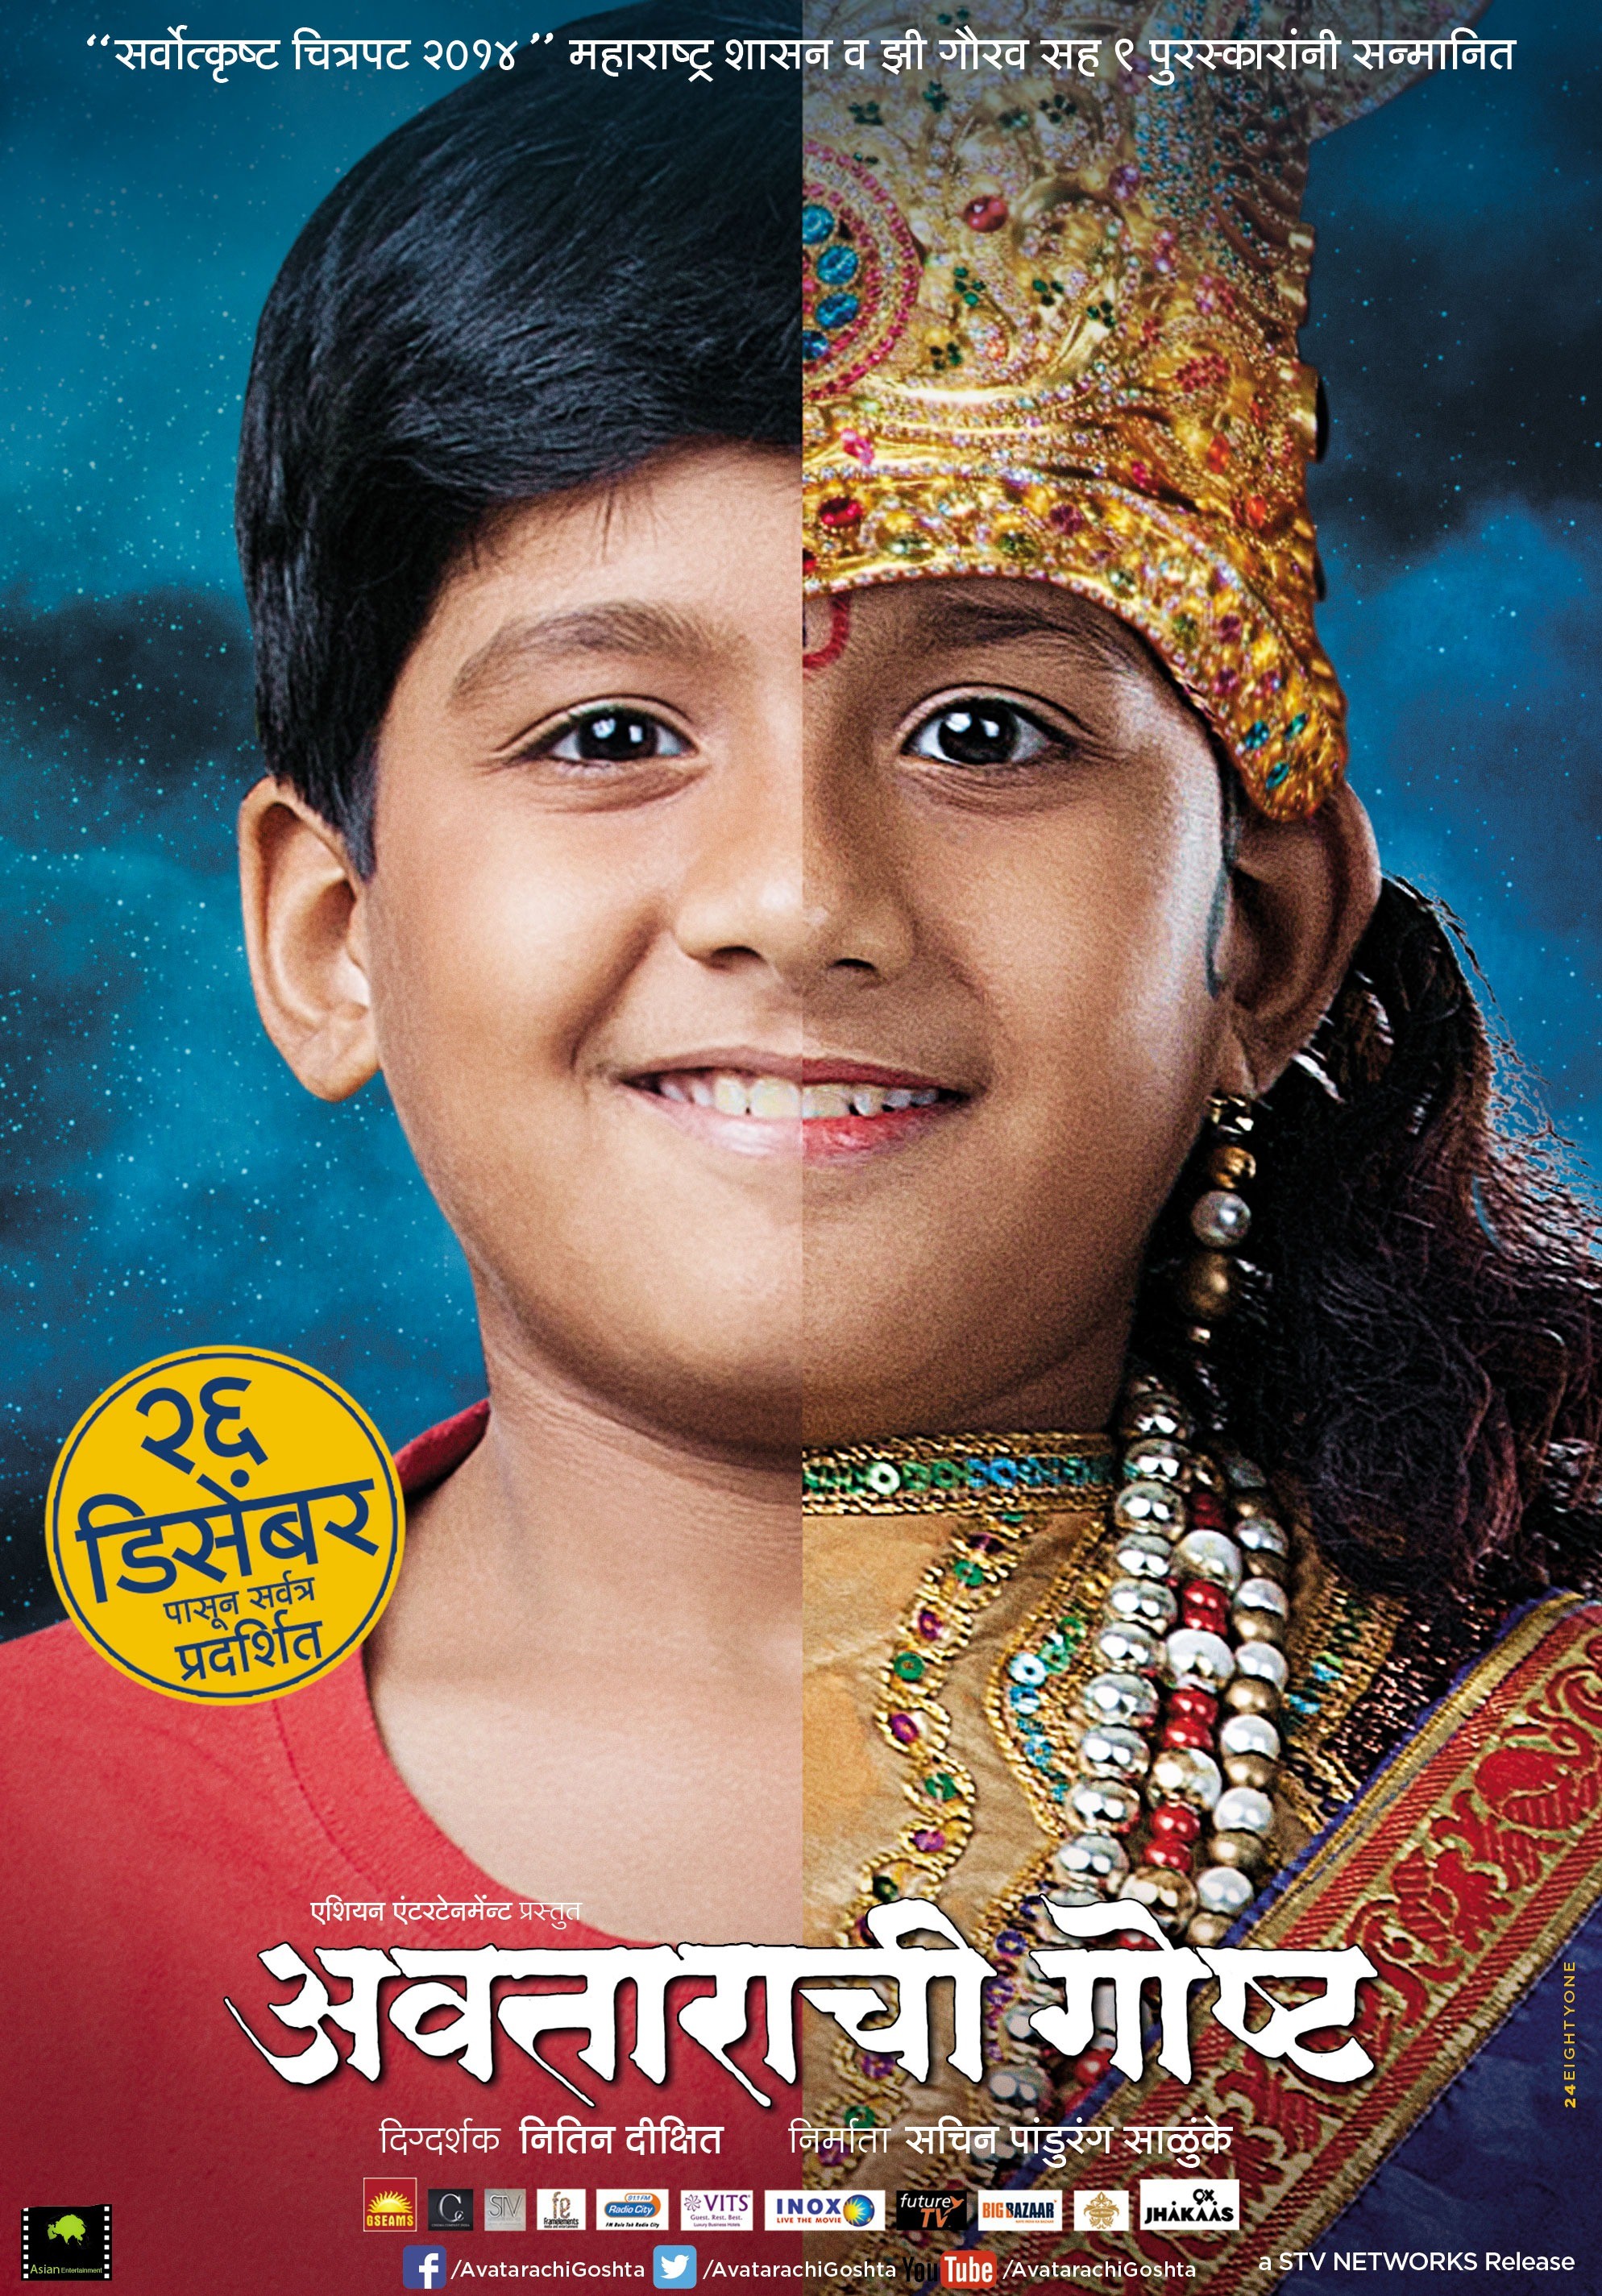 Mega Sized Movie Poster Image for Avatarachi Goshta (#2 of 4)